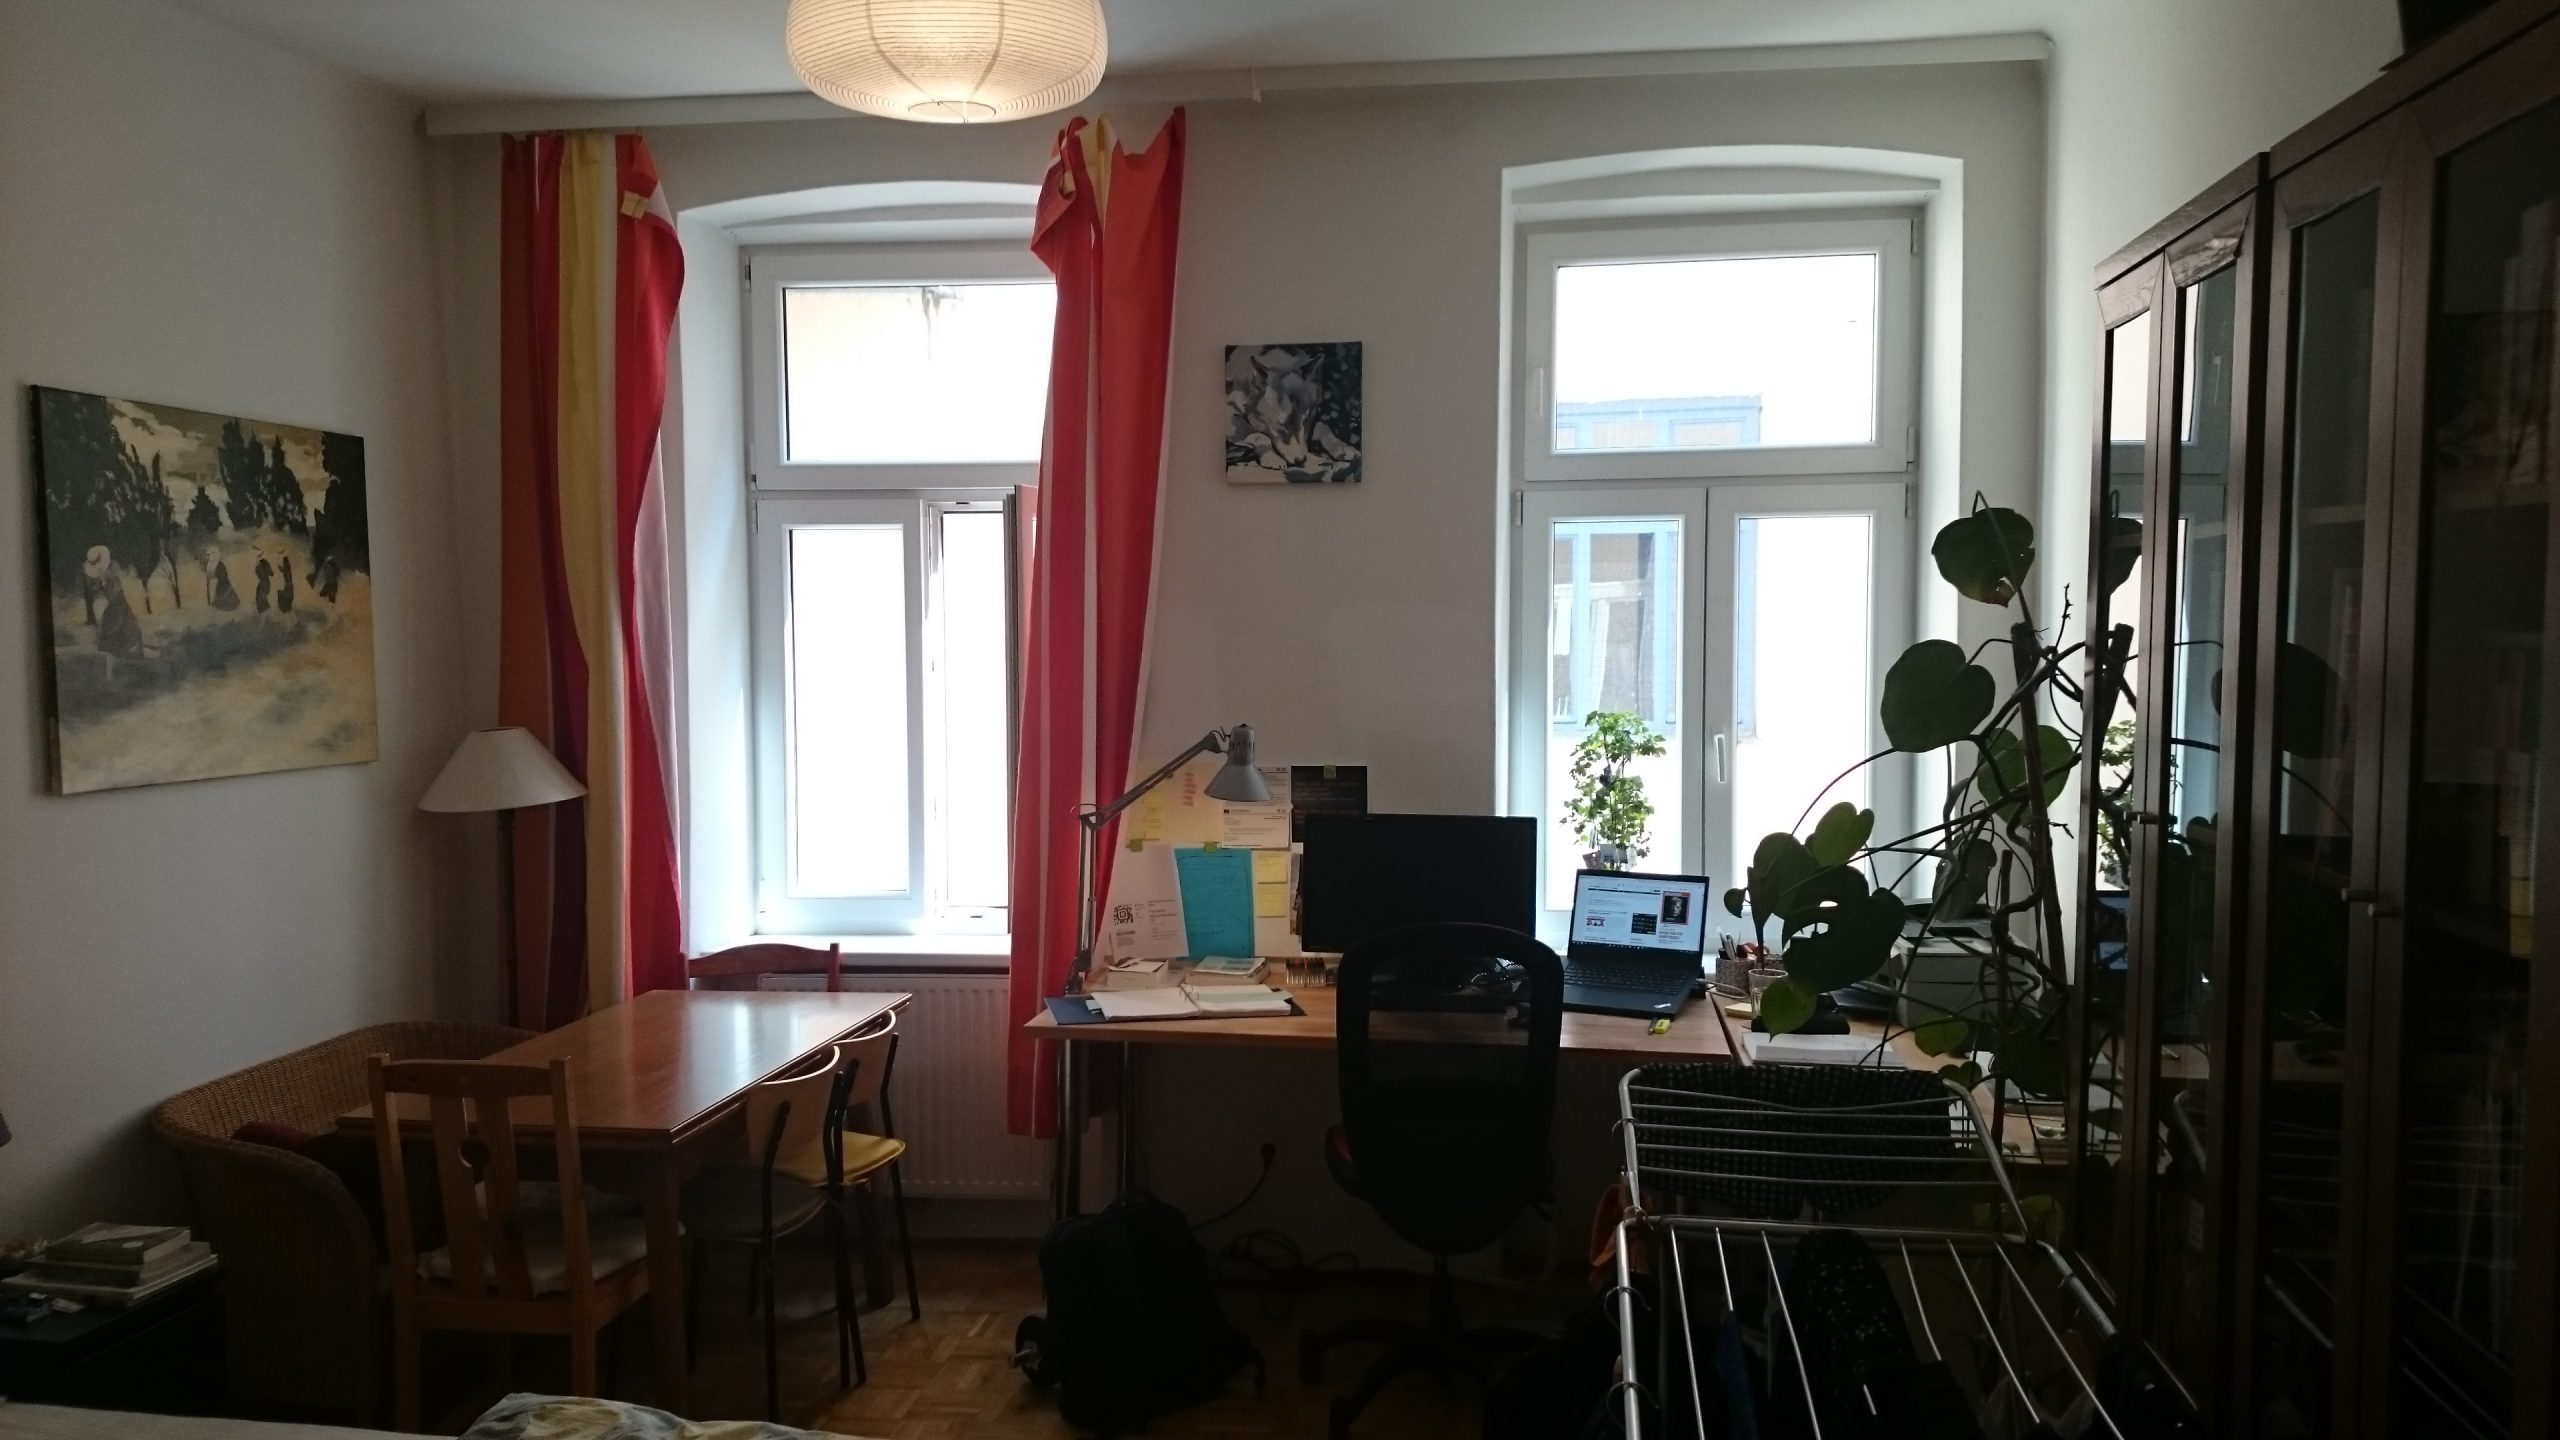 Zimmer mit zwei Fenstern und zwei Tischen, Grünpflanze und Wäschespinne